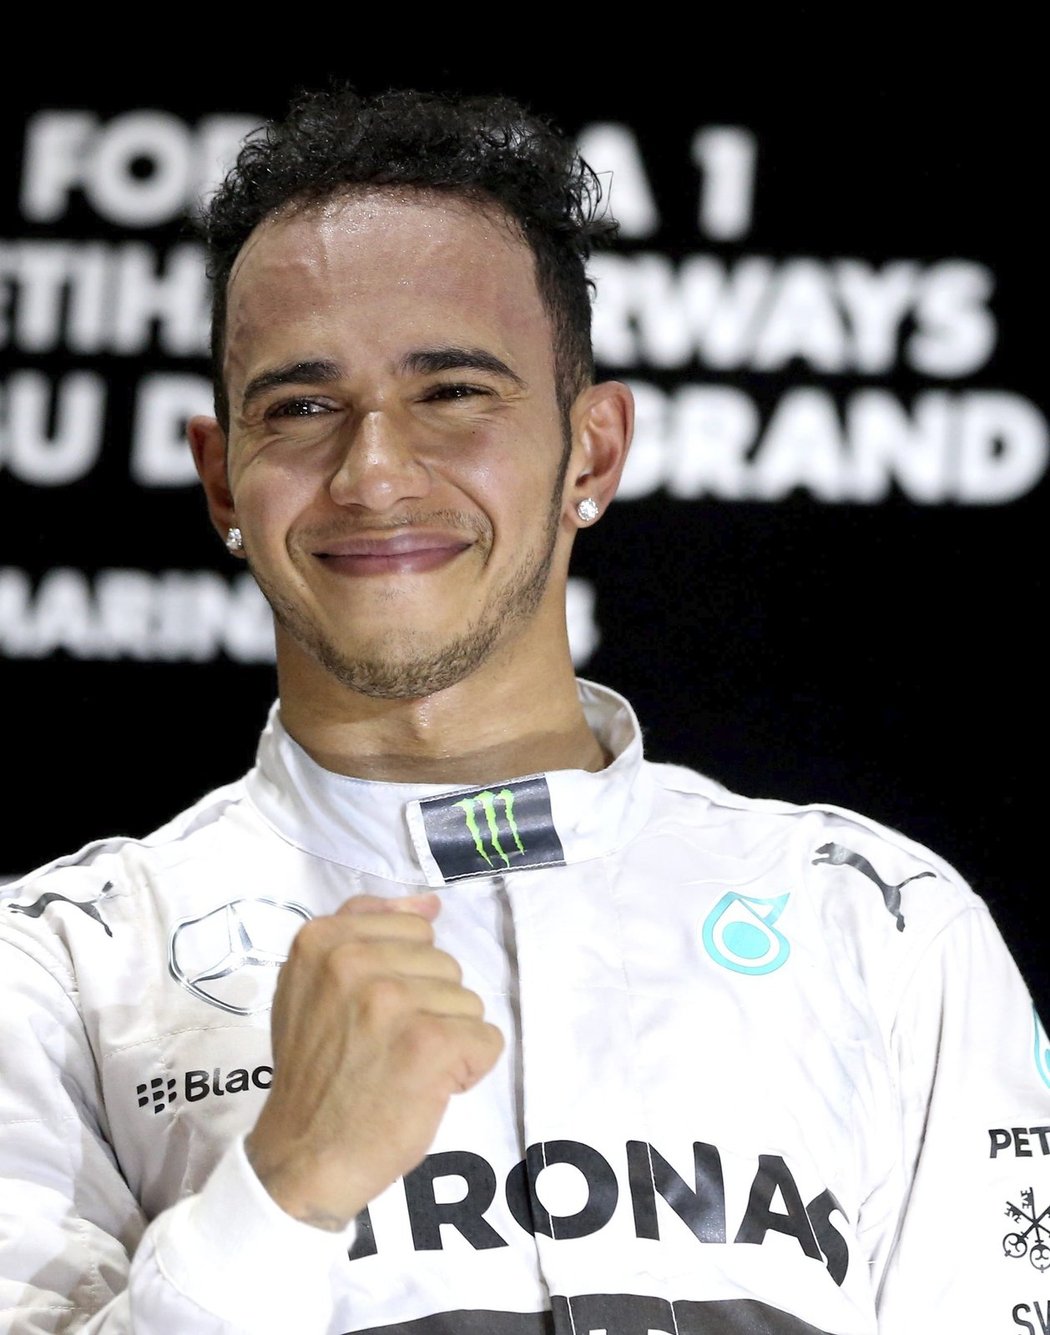 Dojatý Lewis Hamilton na stupních vítězů